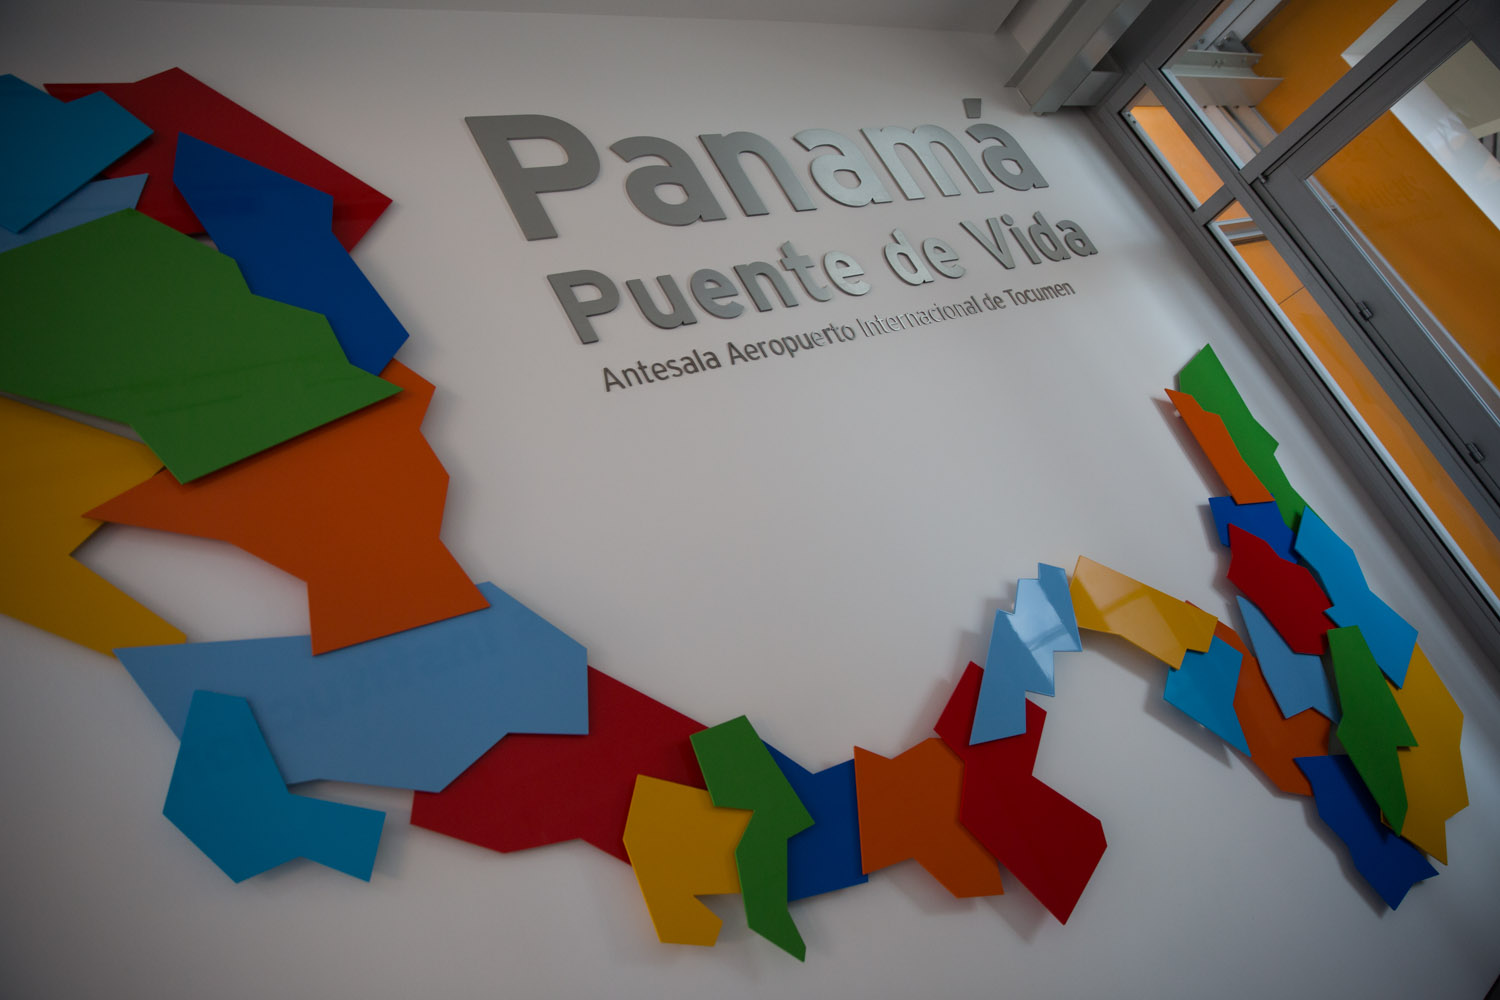 Antesala del Biomuseo de Panamá